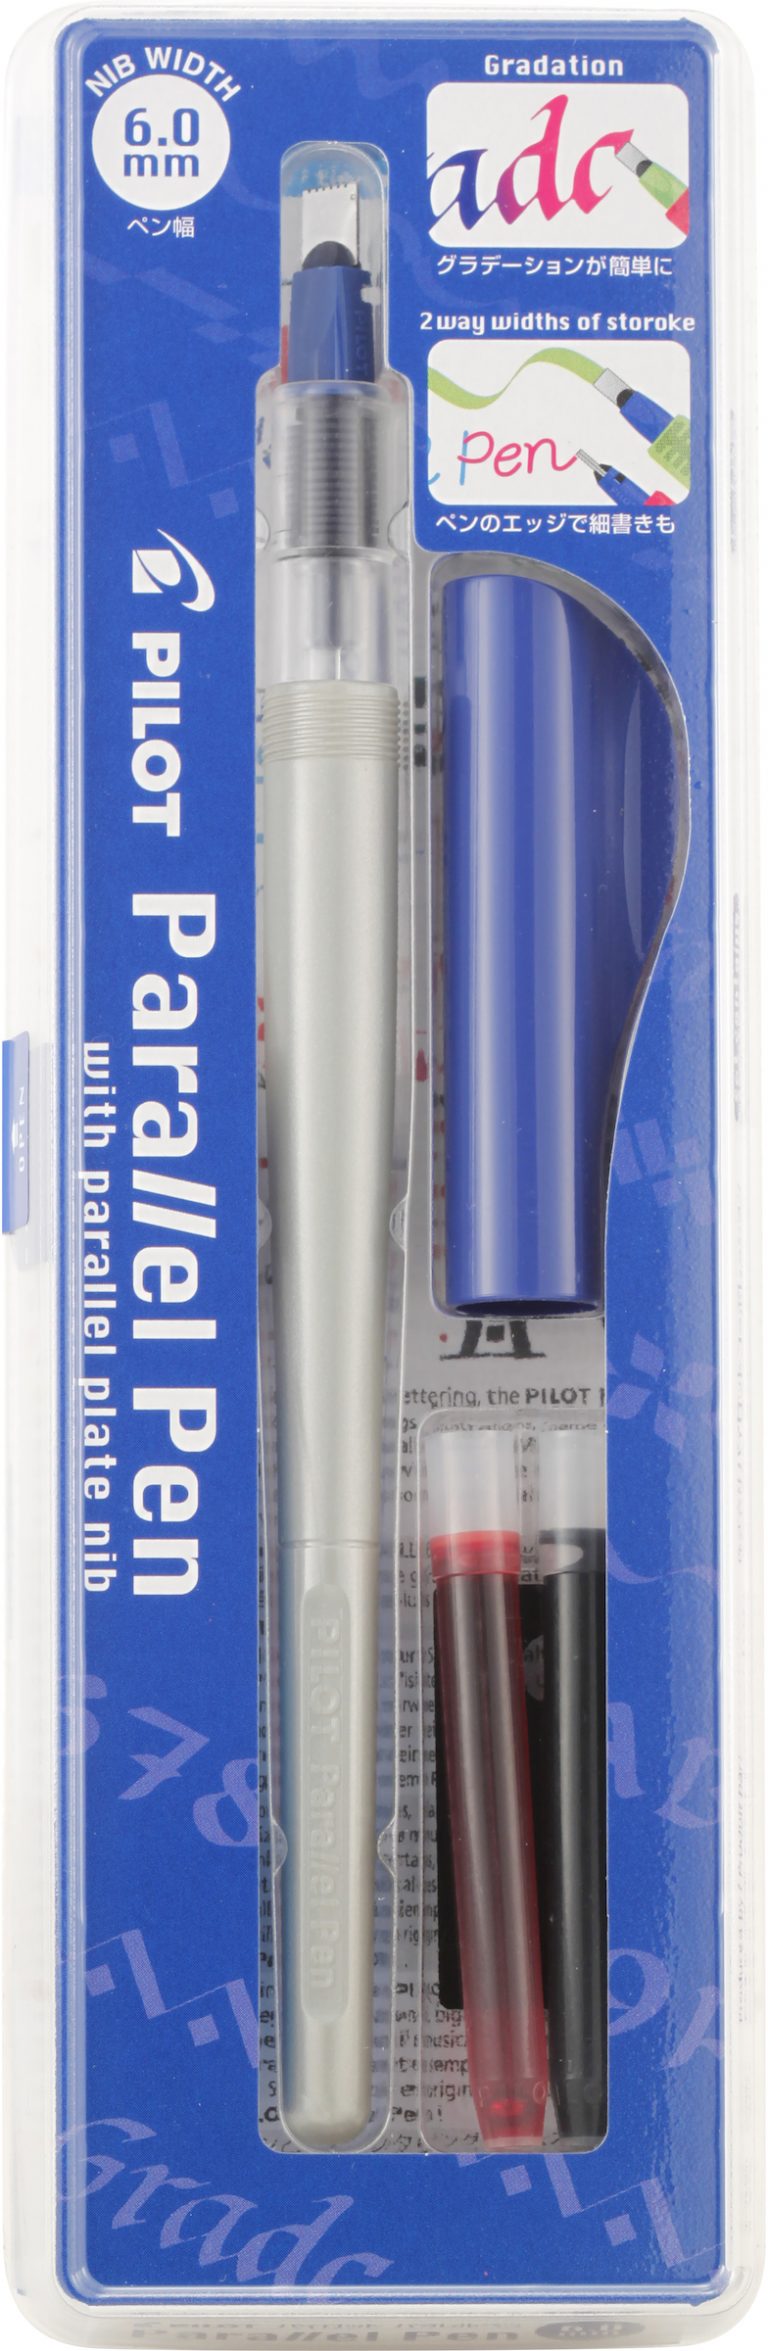 Pilot Parallel Pen 6.0mm